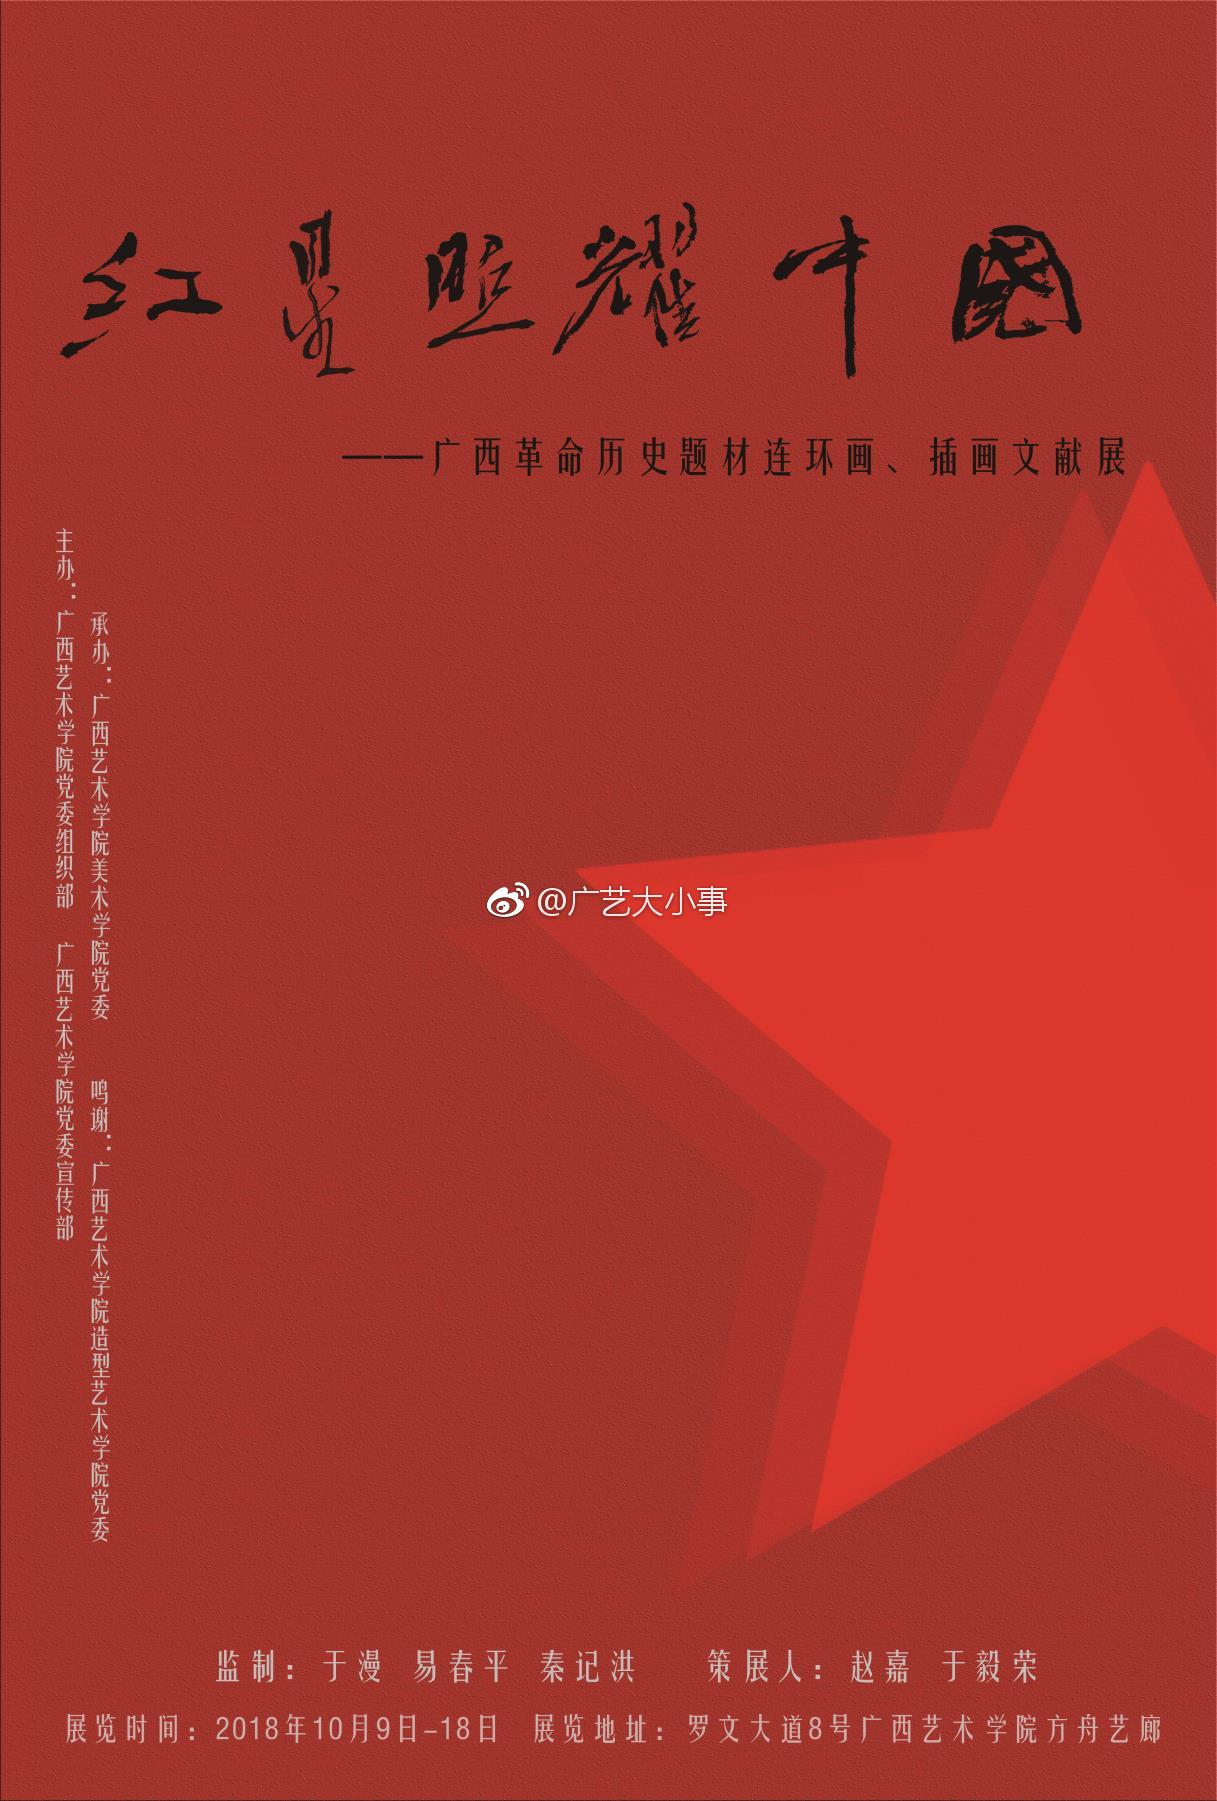 "红星照耀中国"——广西革命历史题材连环画,插画文献